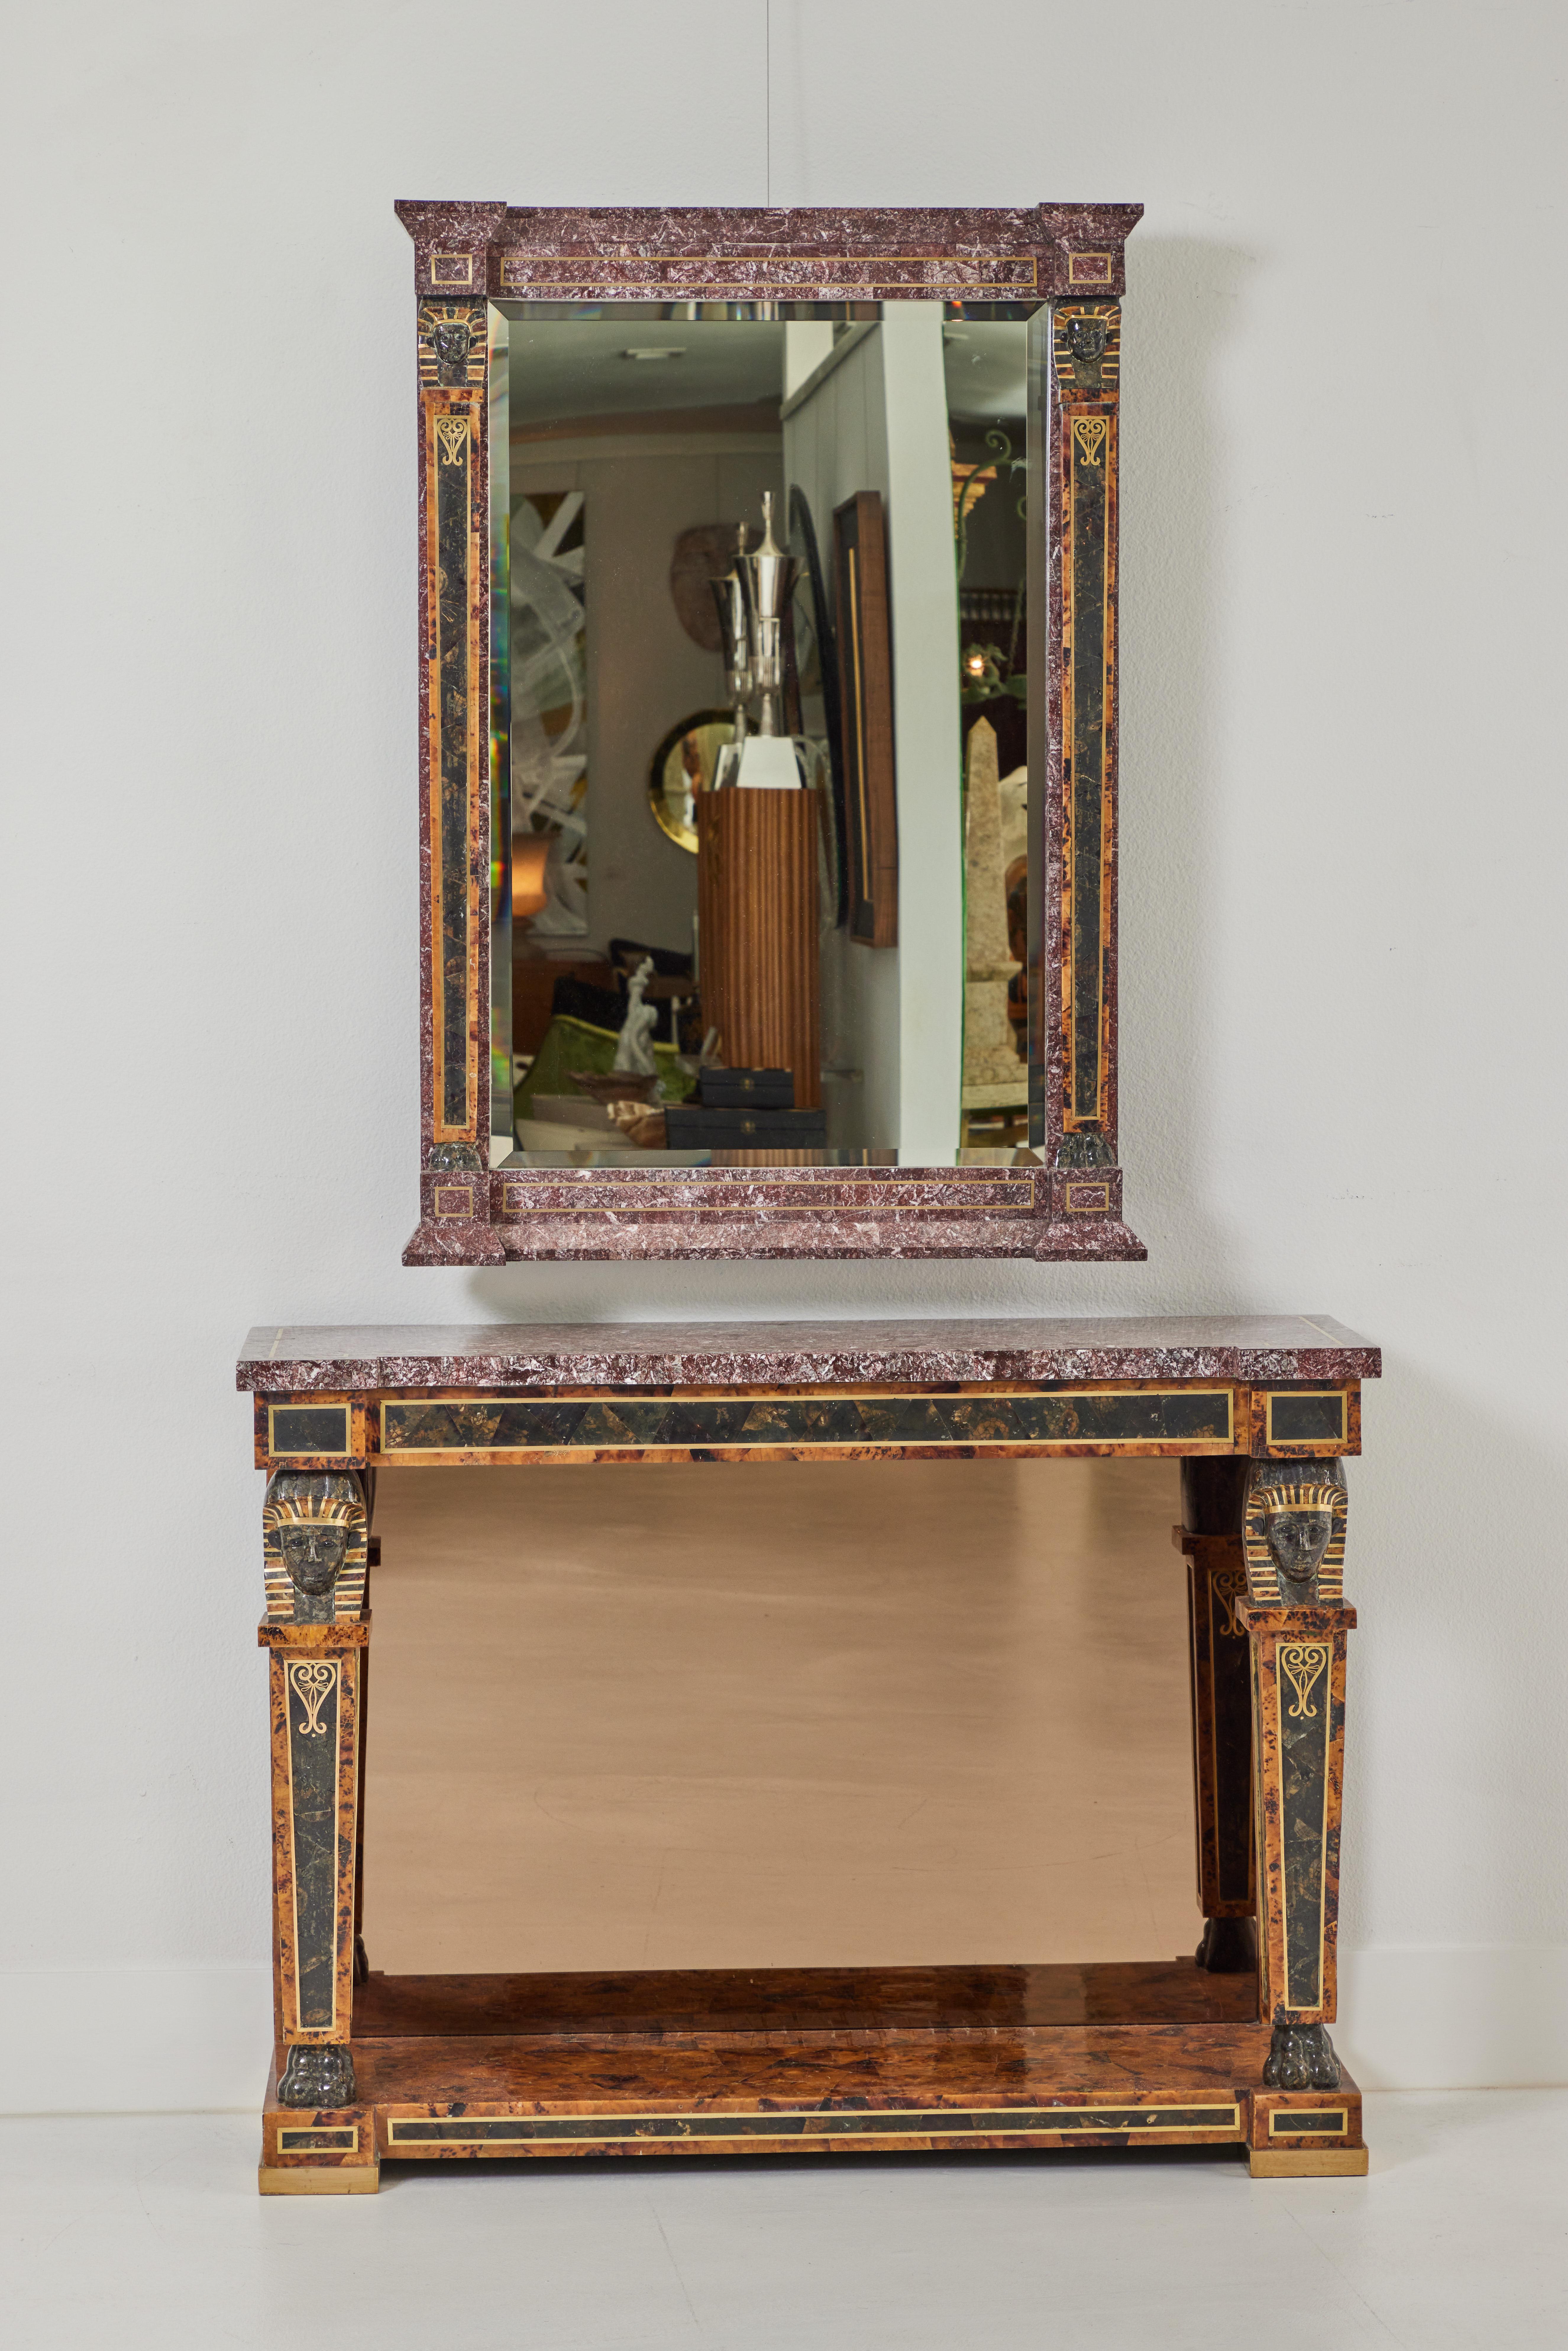 Cette console et ce miroir de style néo-égyptien présentent une pierre et une coquille tessellées avec des incrustations en laiton. Fabriquée par Maitland Smith dans les années 1980, la console est rehaussée de têtes de sphinx au-dessus des pieds